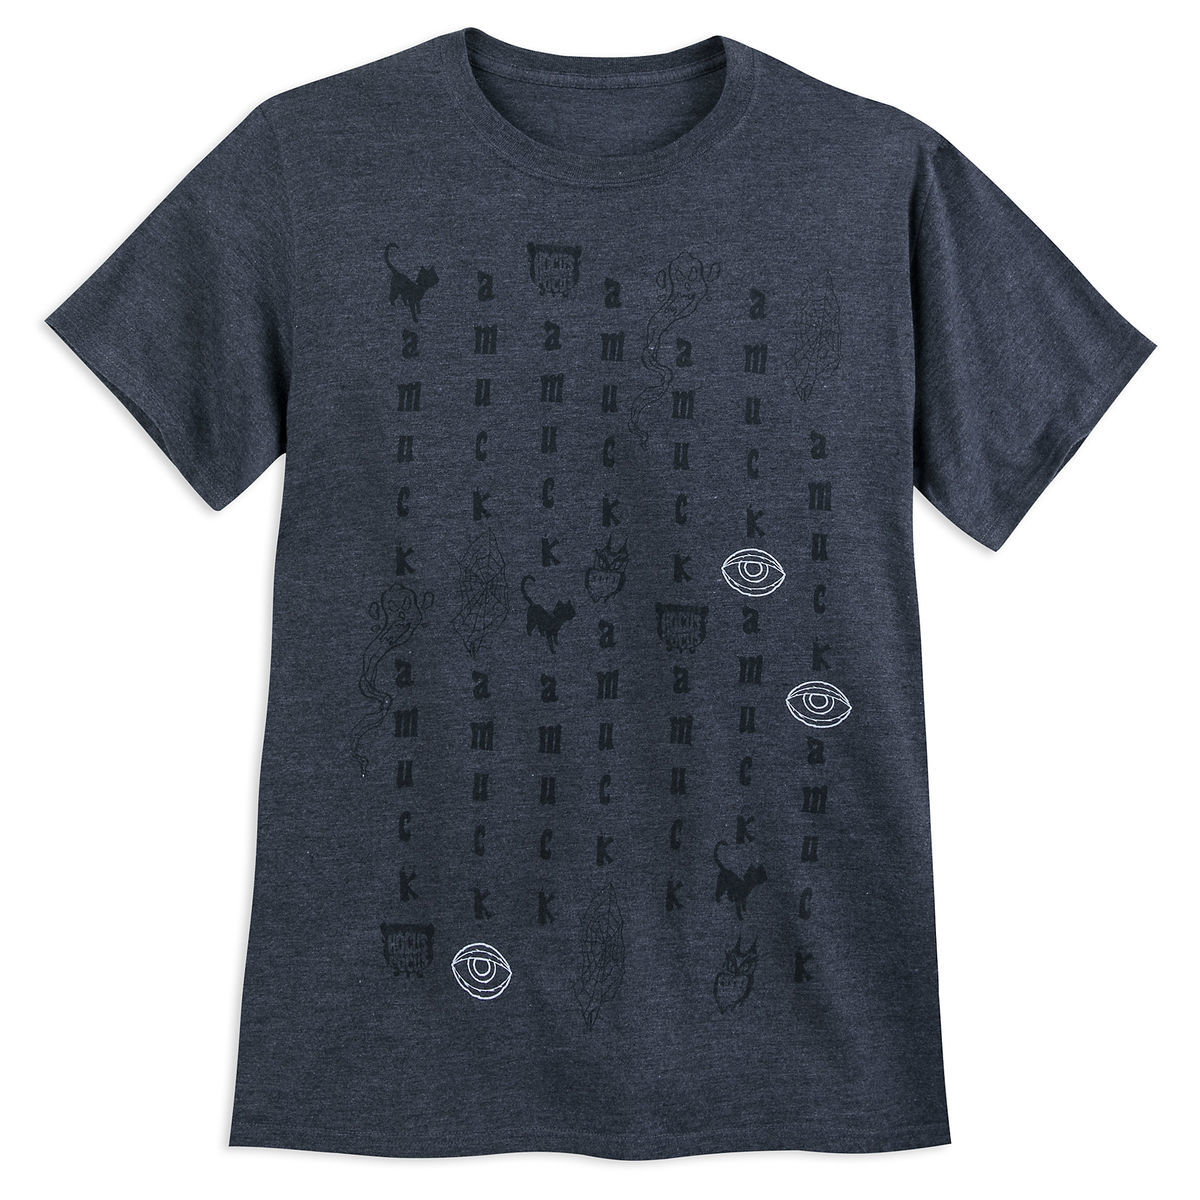 Hocus Pocus T-Shirt for Men